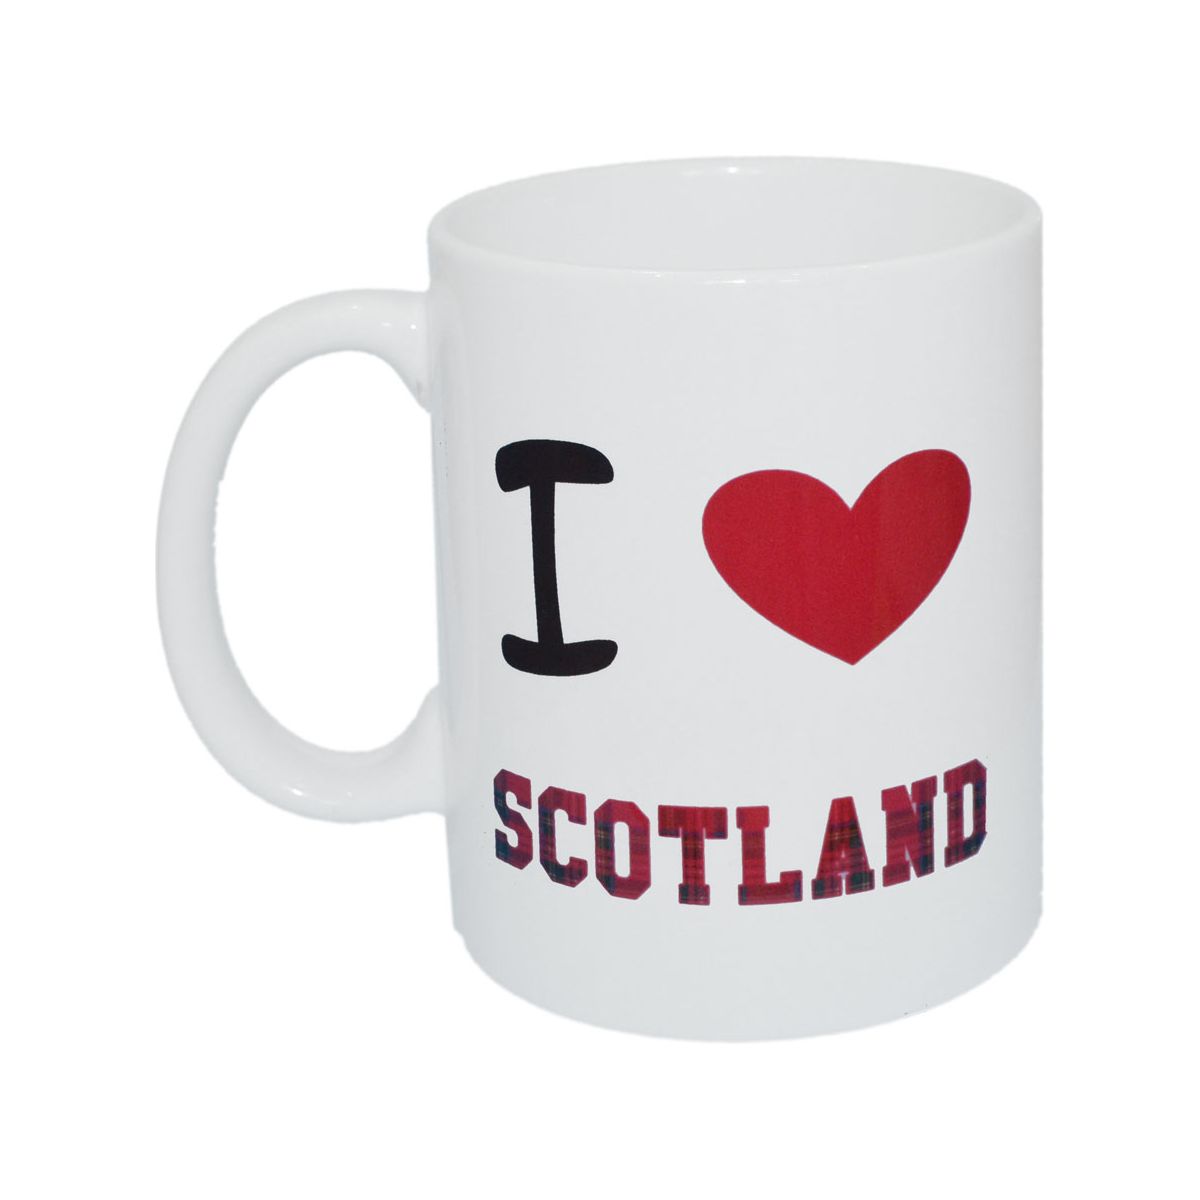 I Love Scotland Royal Stewart Tartan Ceramic Mug - Ashton and Finch